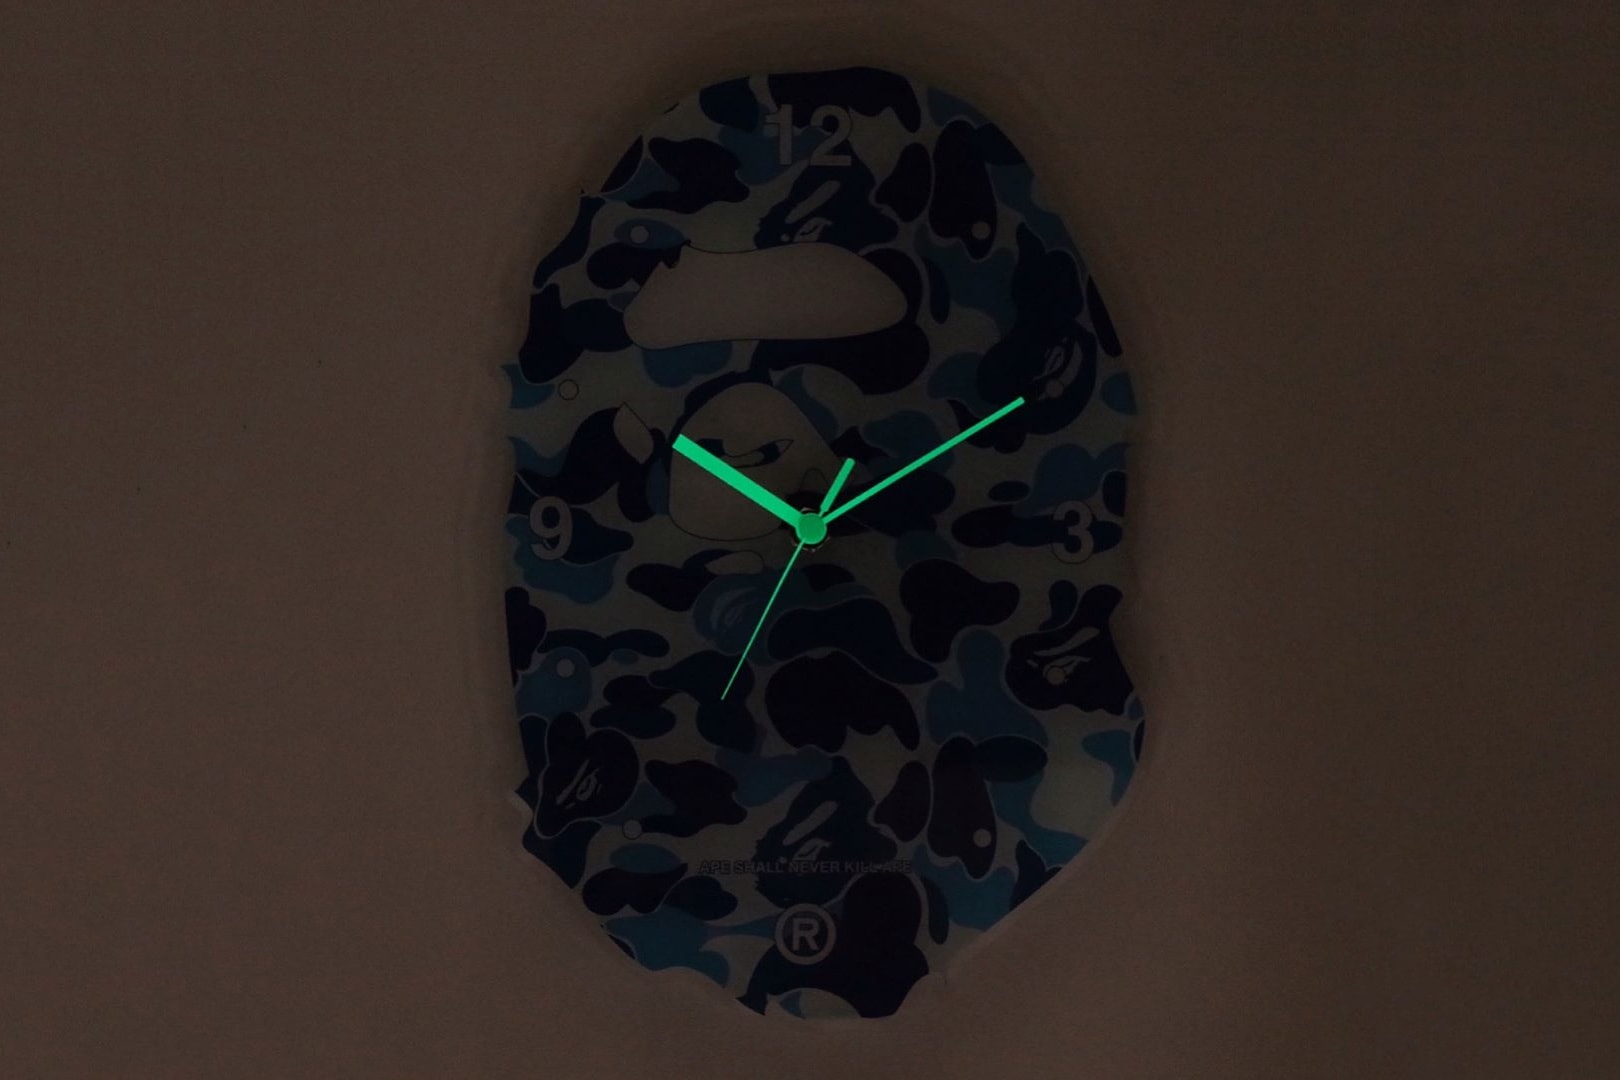 베이프 에이프 카무플라주 벽시계 Bape ape head camouflage glow in the dark wall clock 2017